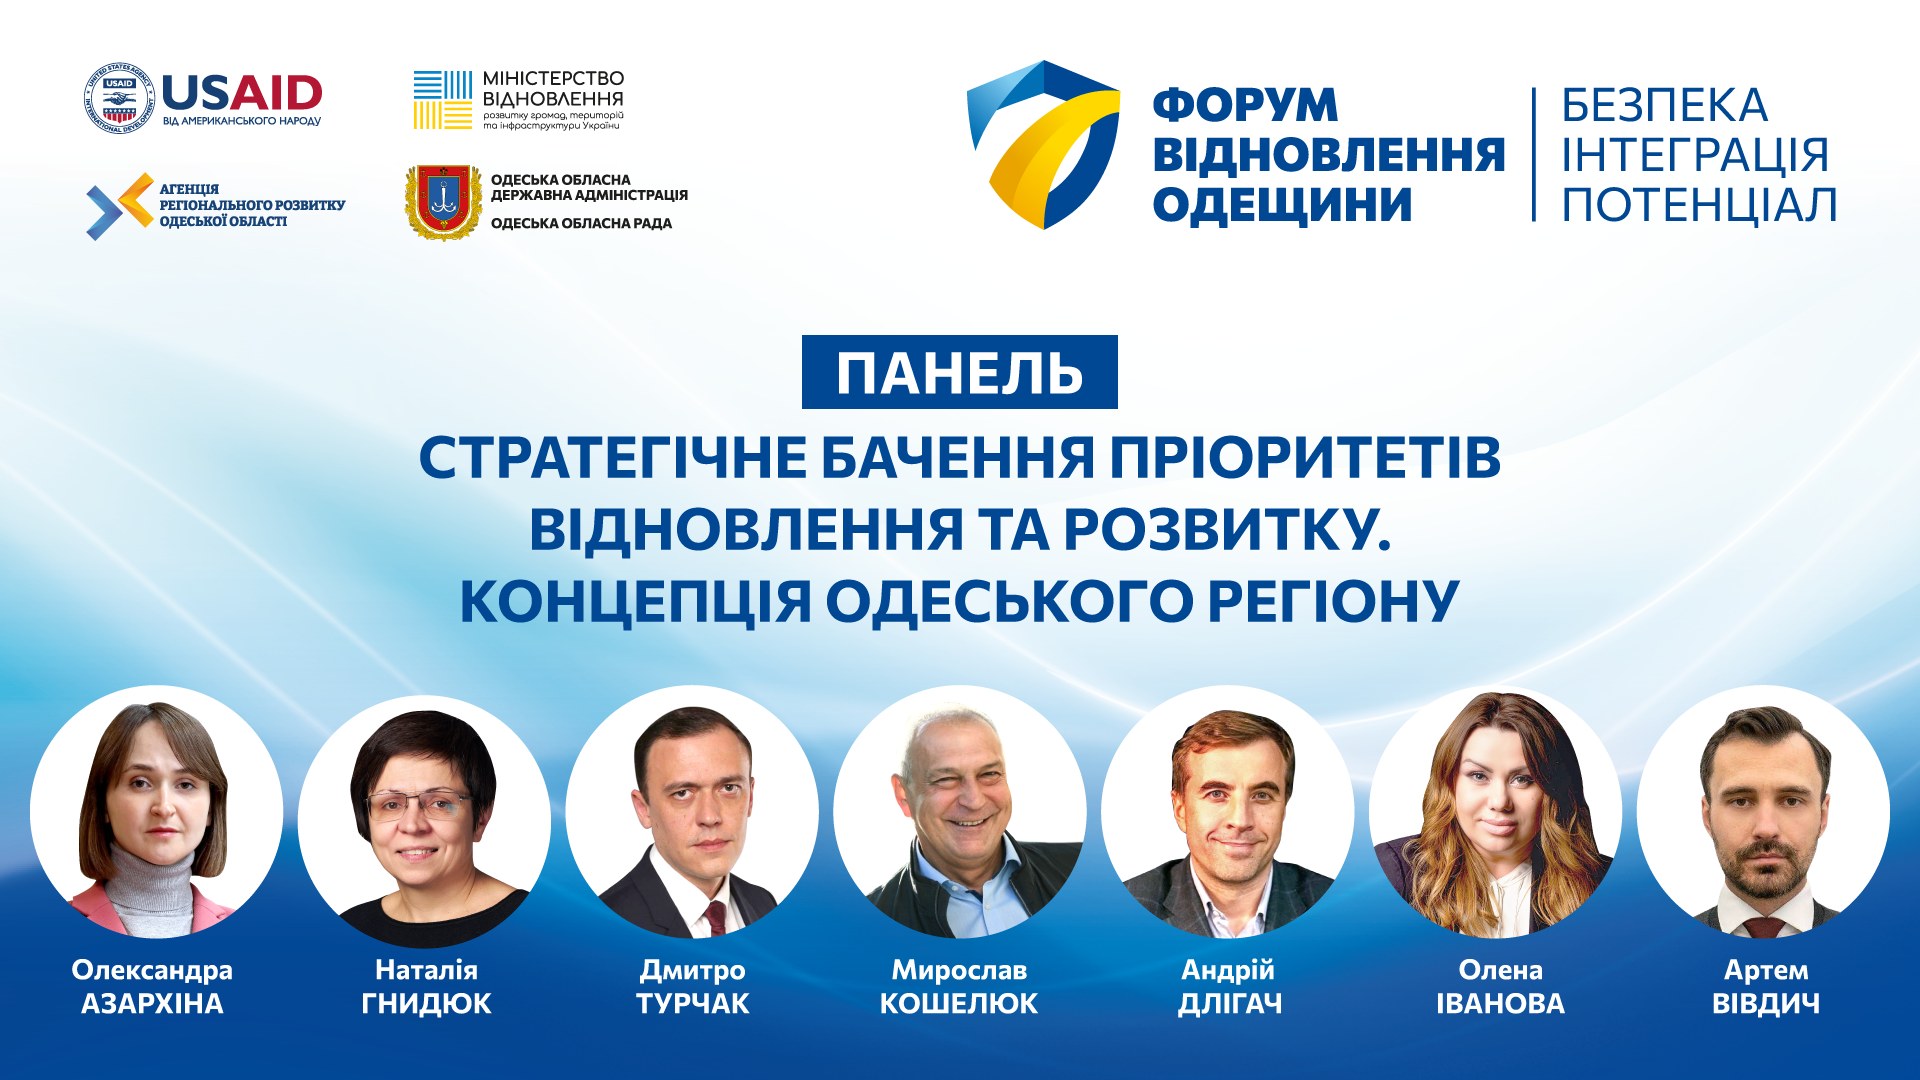 Перший масштабний захід на Півдні України про відновлення та розвиток відбувся!